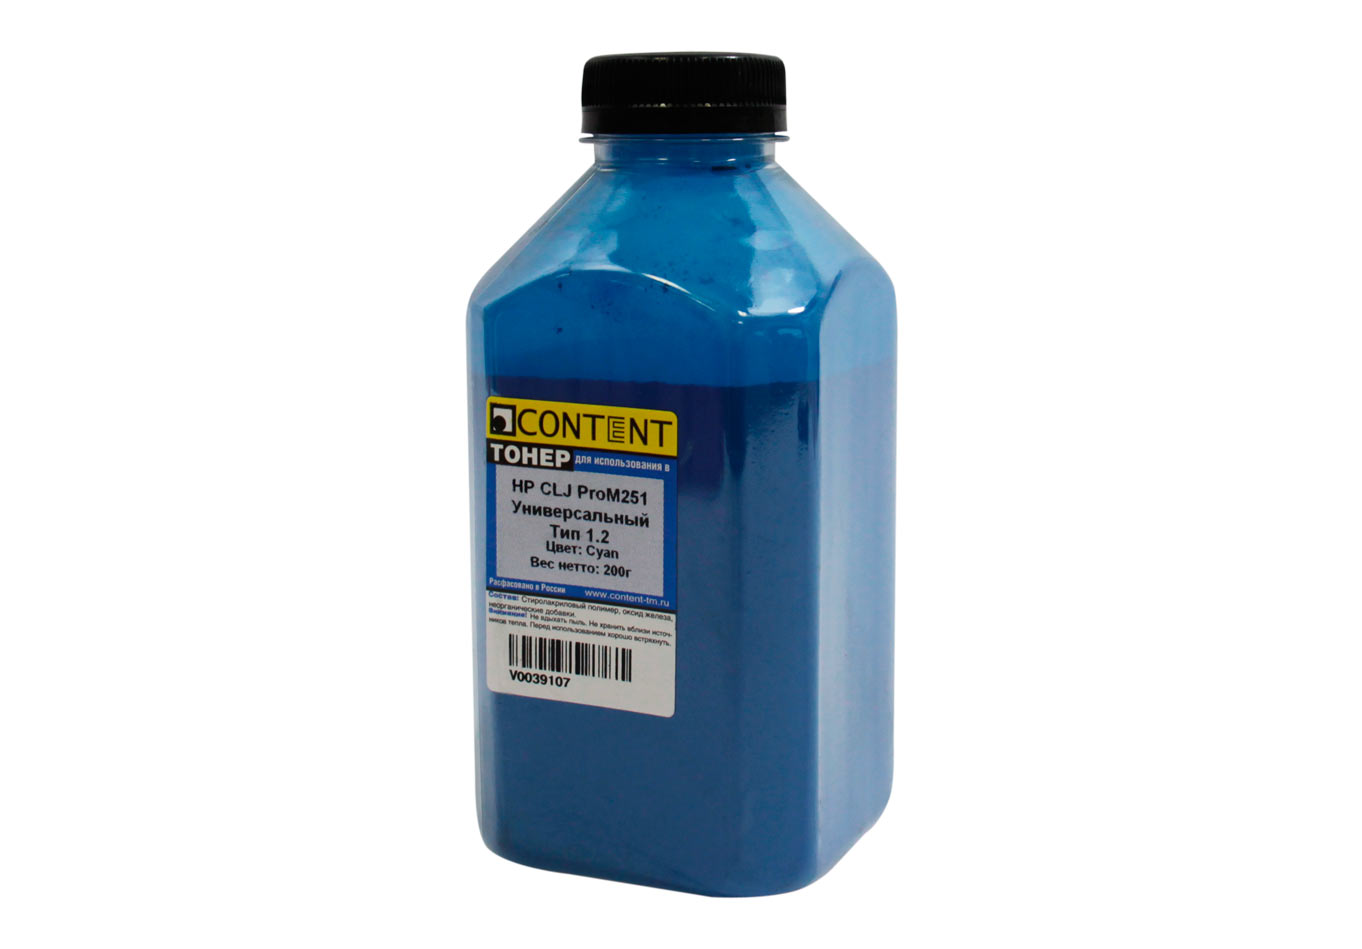 Тонер Content Тип 1.2, бутыль 200 г, голубой, совместимый для CLJ Pro M251, универсальный (V0039107)